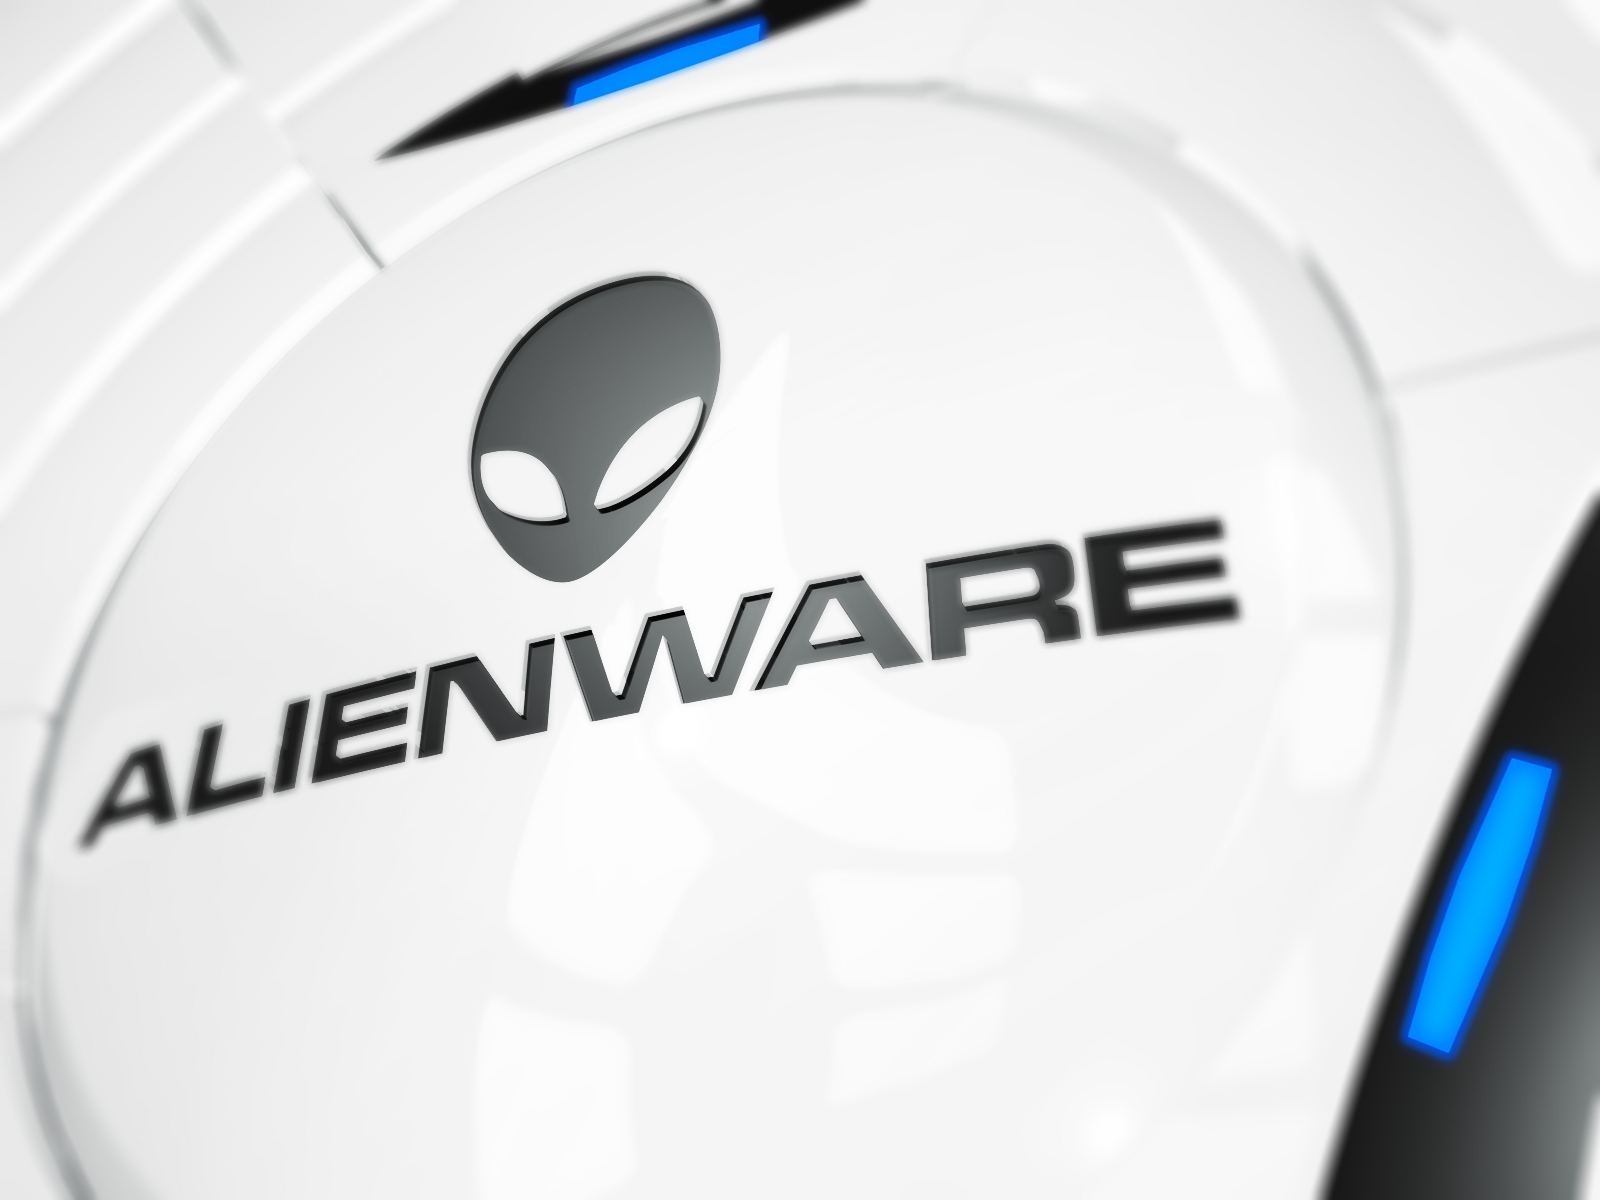 壁纸1600x1200Alienware 戴尔 壁纸5壁纸 Alienware（戴尔）壁纸 Alienware（戴尔）图片 Alienware（戴尔）素材 系统壁纸 系统图库 系统图片素材桌面壁纸